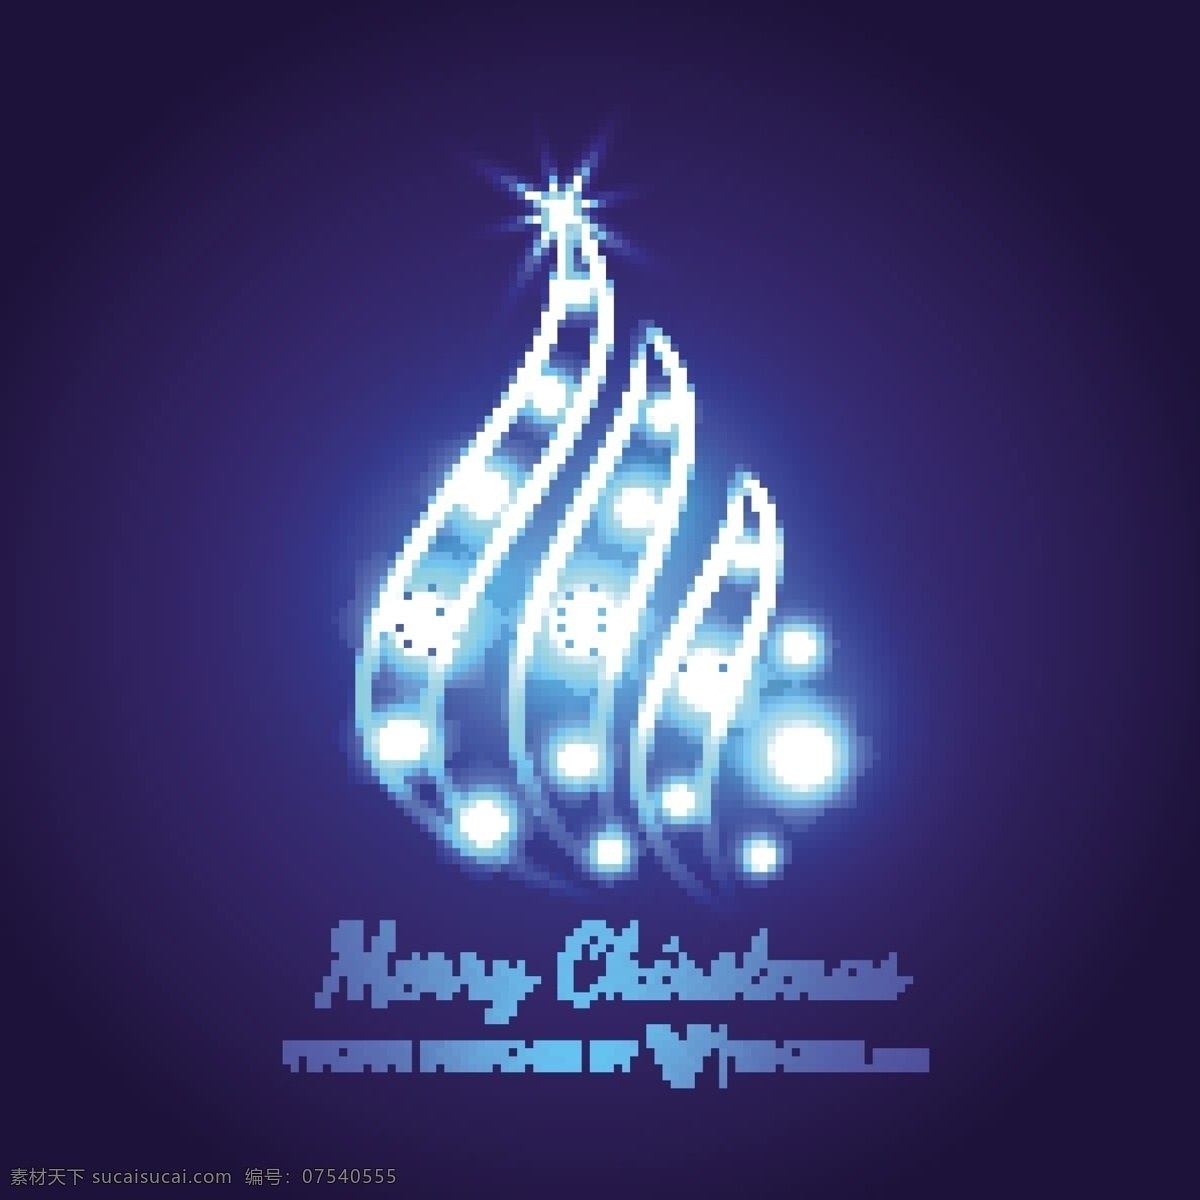 摘要 闪亮 蓝色 创意 圣诞树 背景壁纸 庆典和聚会 圣诞节 节日和季节性 装饰装潢 模板和模型